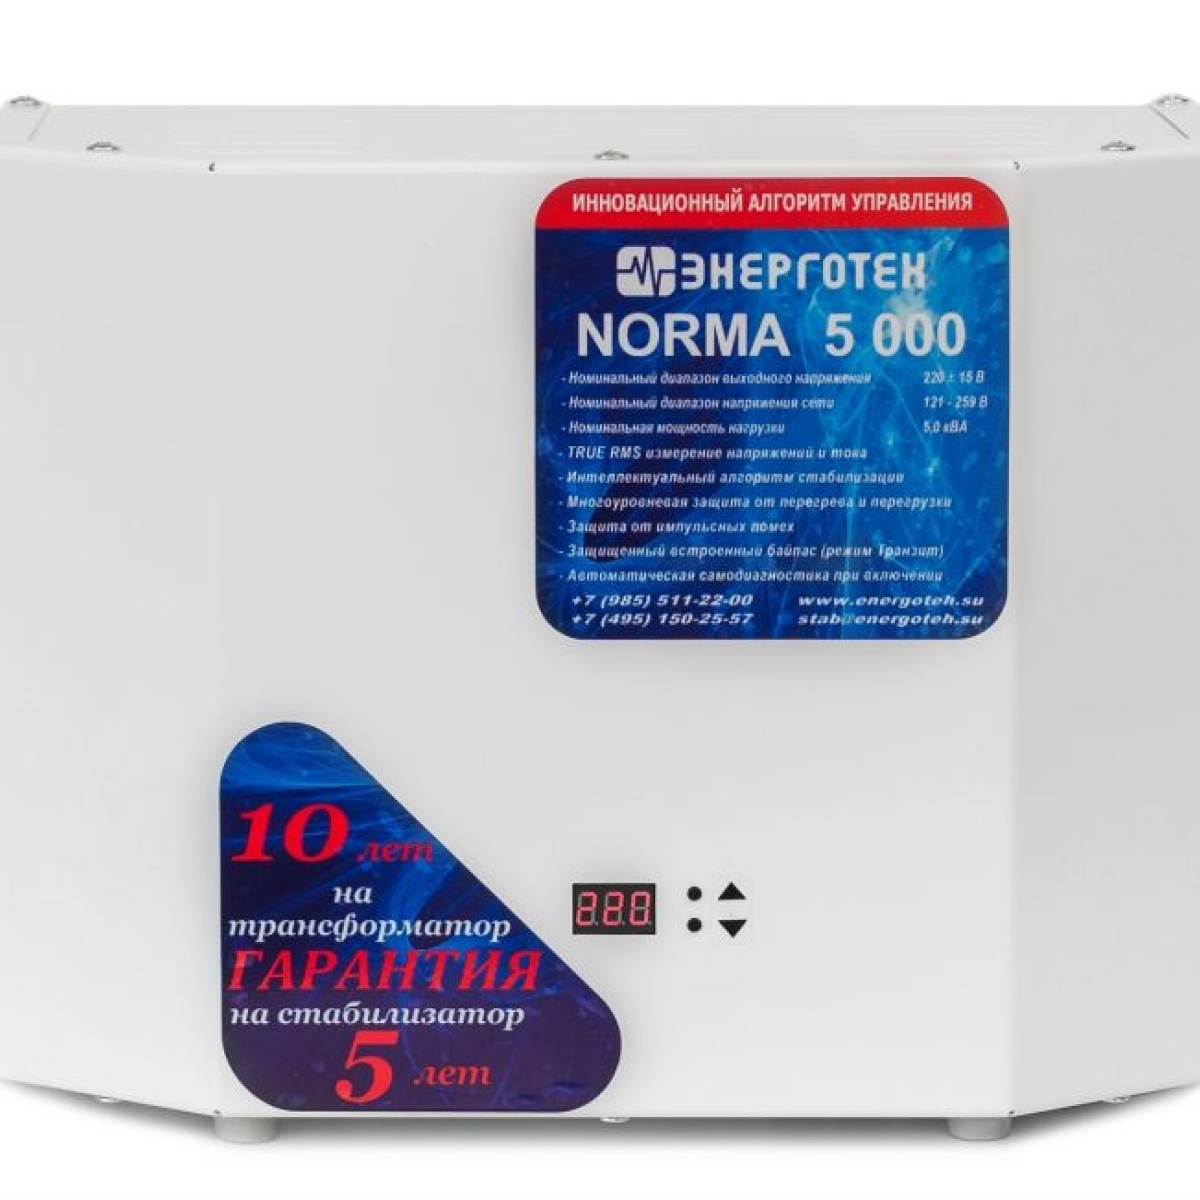 Однофазный стабилизатор Энерготех Norma 5000(HV)